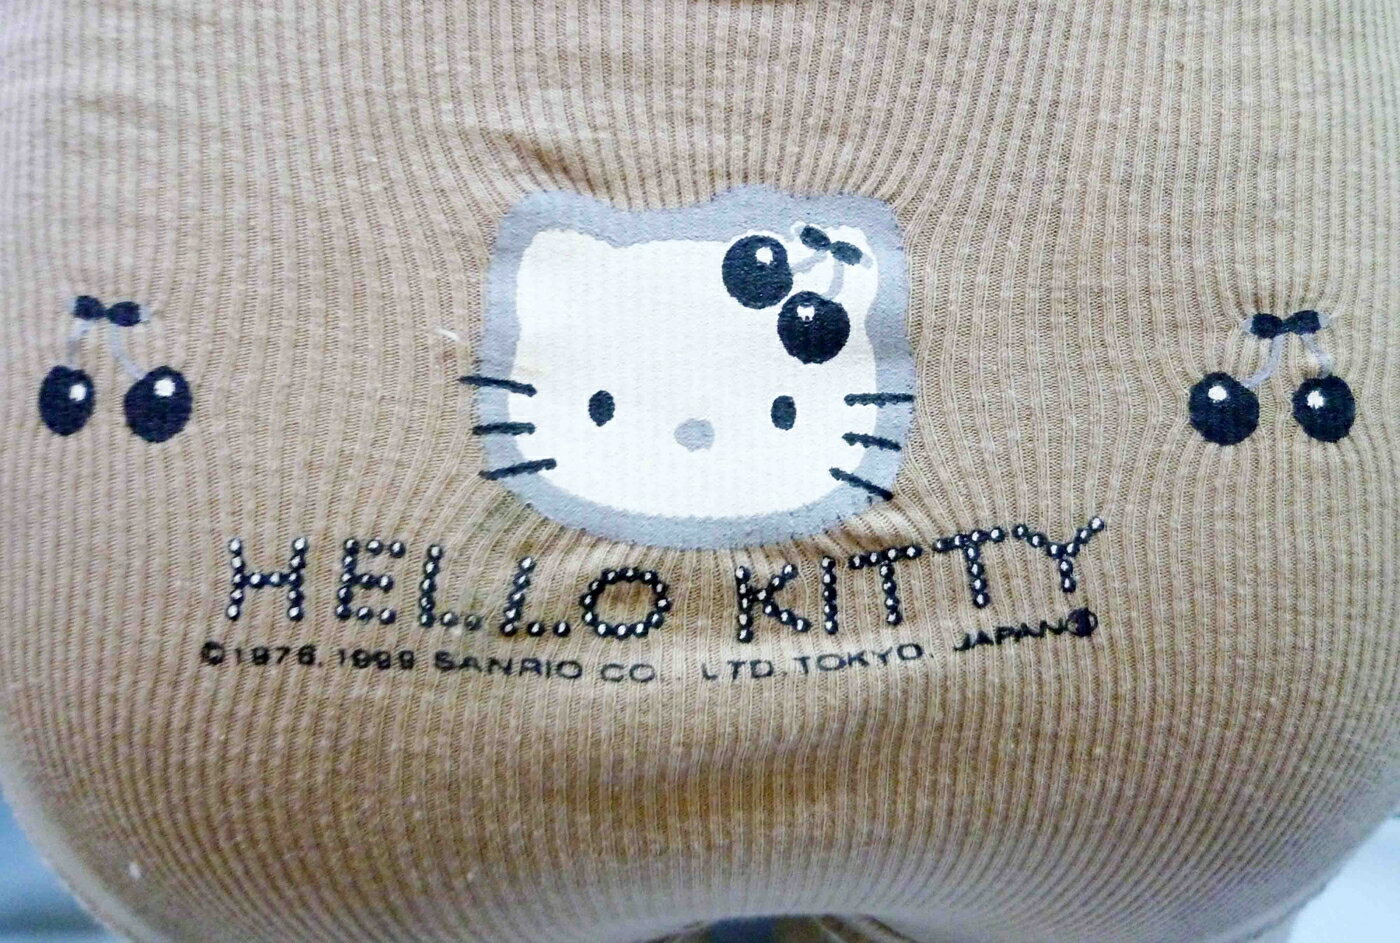 【震撼精品百貨】Hello Kitty 凱蒂貓 KITTY內衣褲-內褲-咖啡(頭) 震撼日式精品百貨